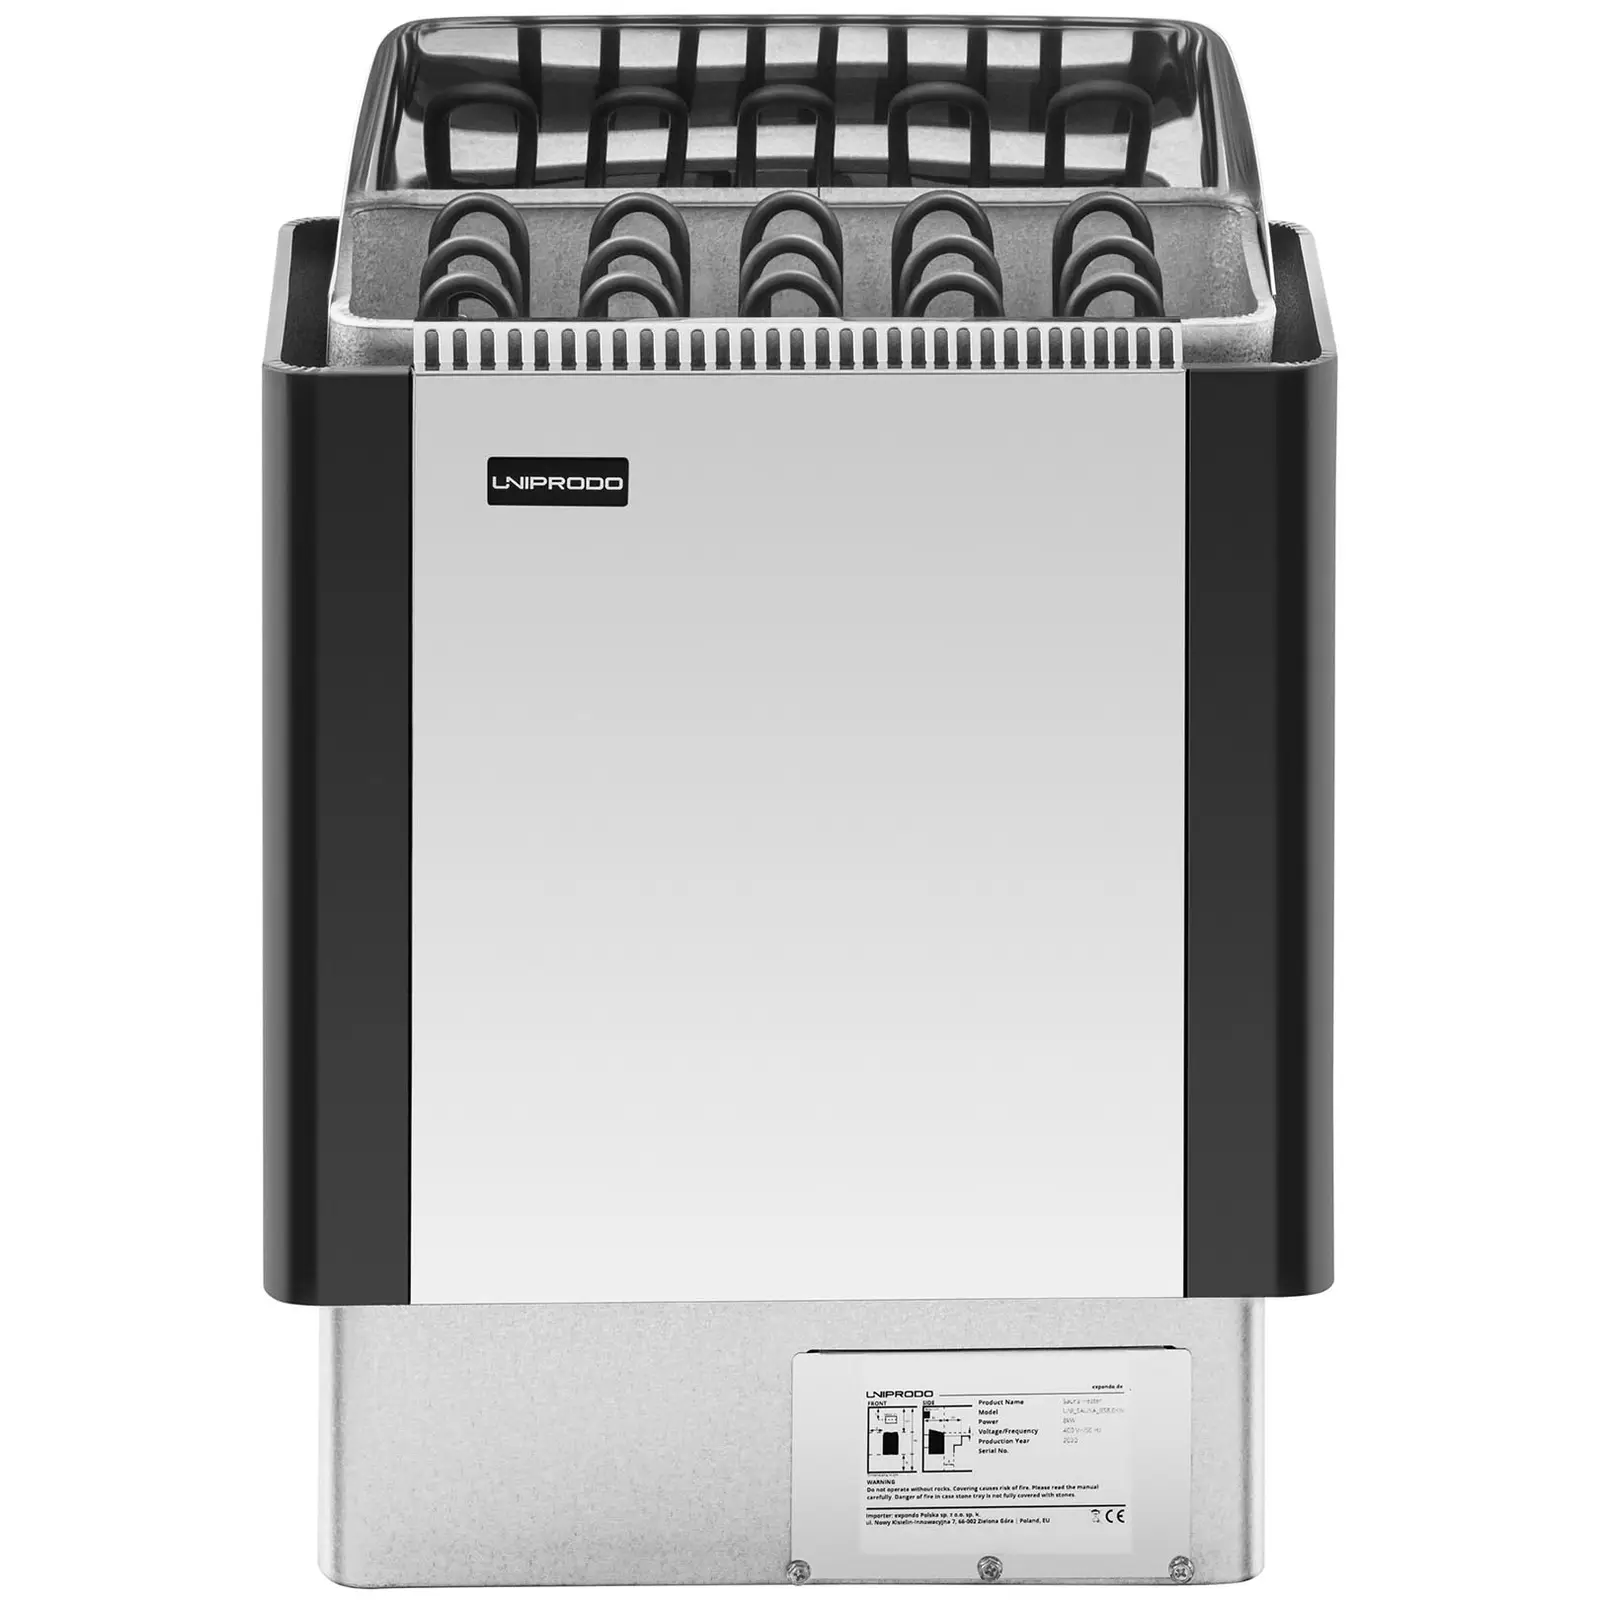 Saunaofen - 8 kW - 30 bis 110 °C - Edelstahlblende - 6